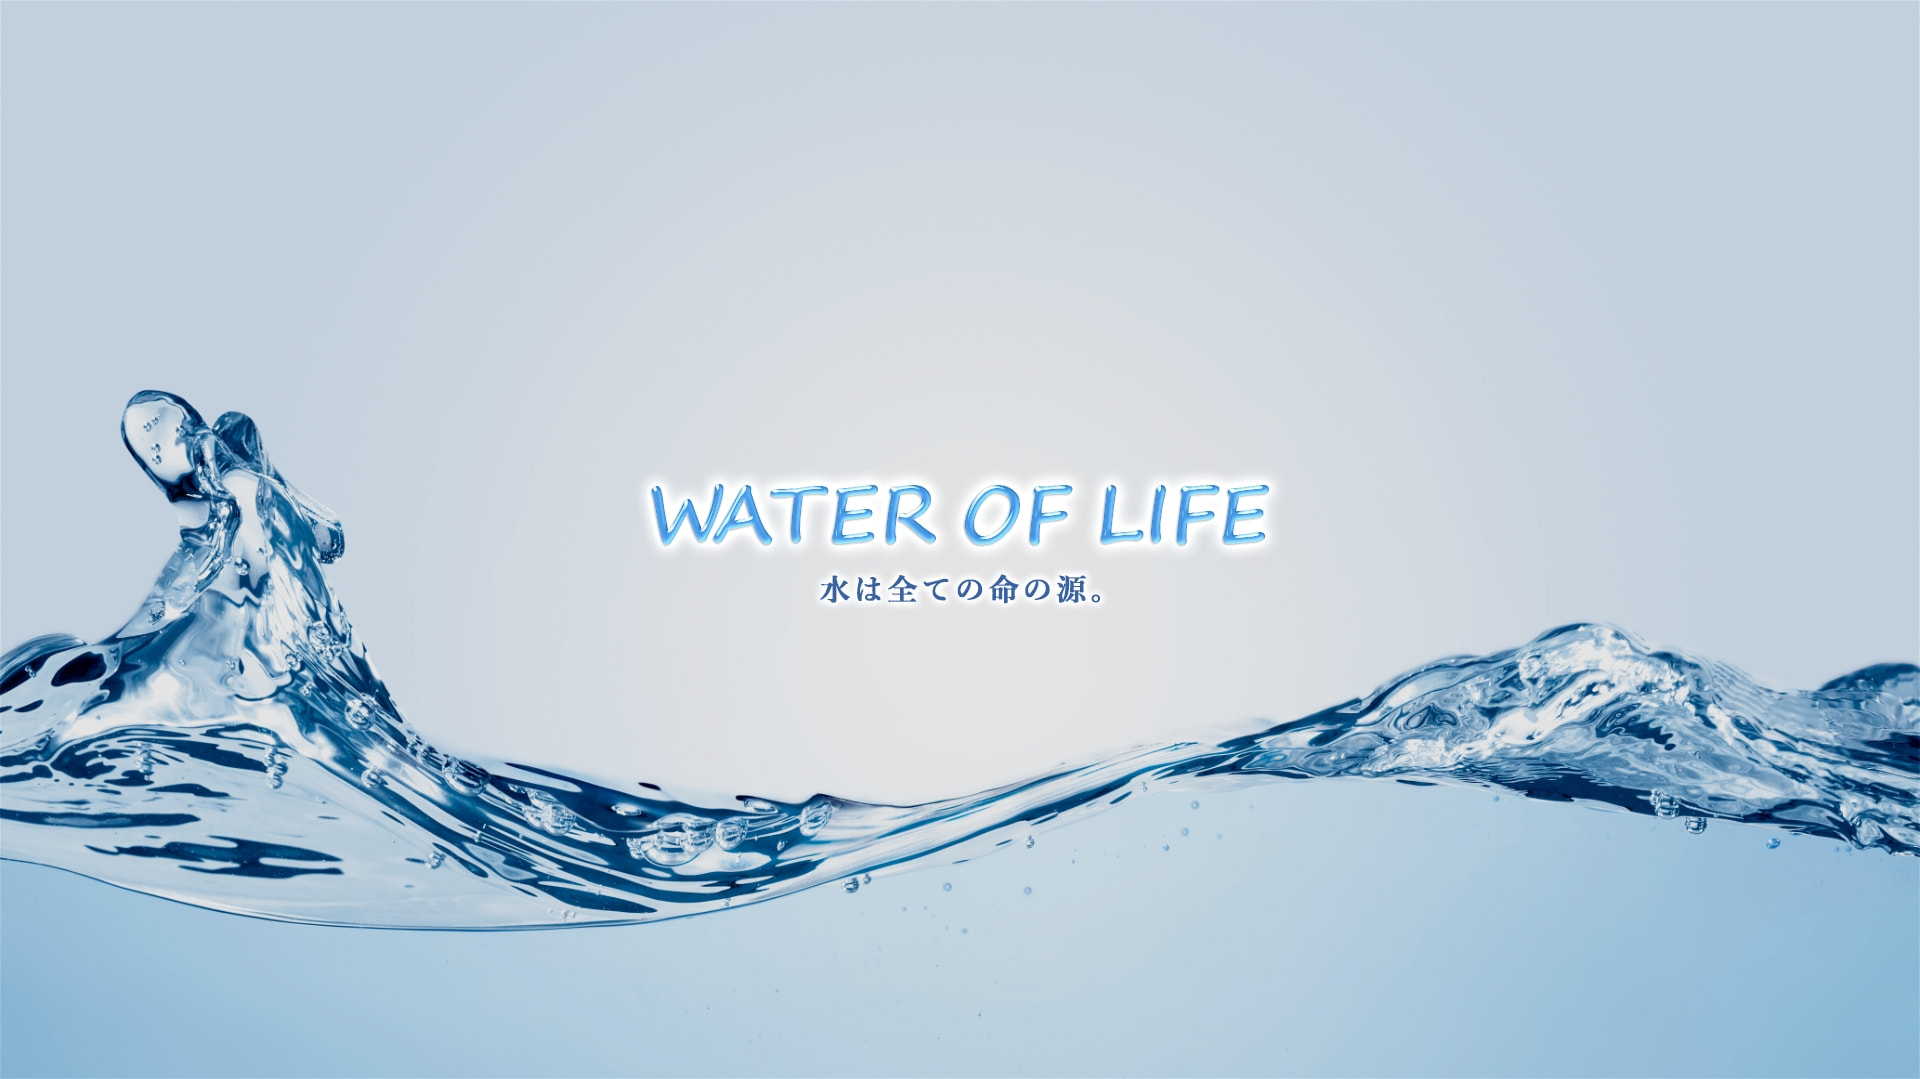 Water of Life 私たちは命の水を守る活動をしています。